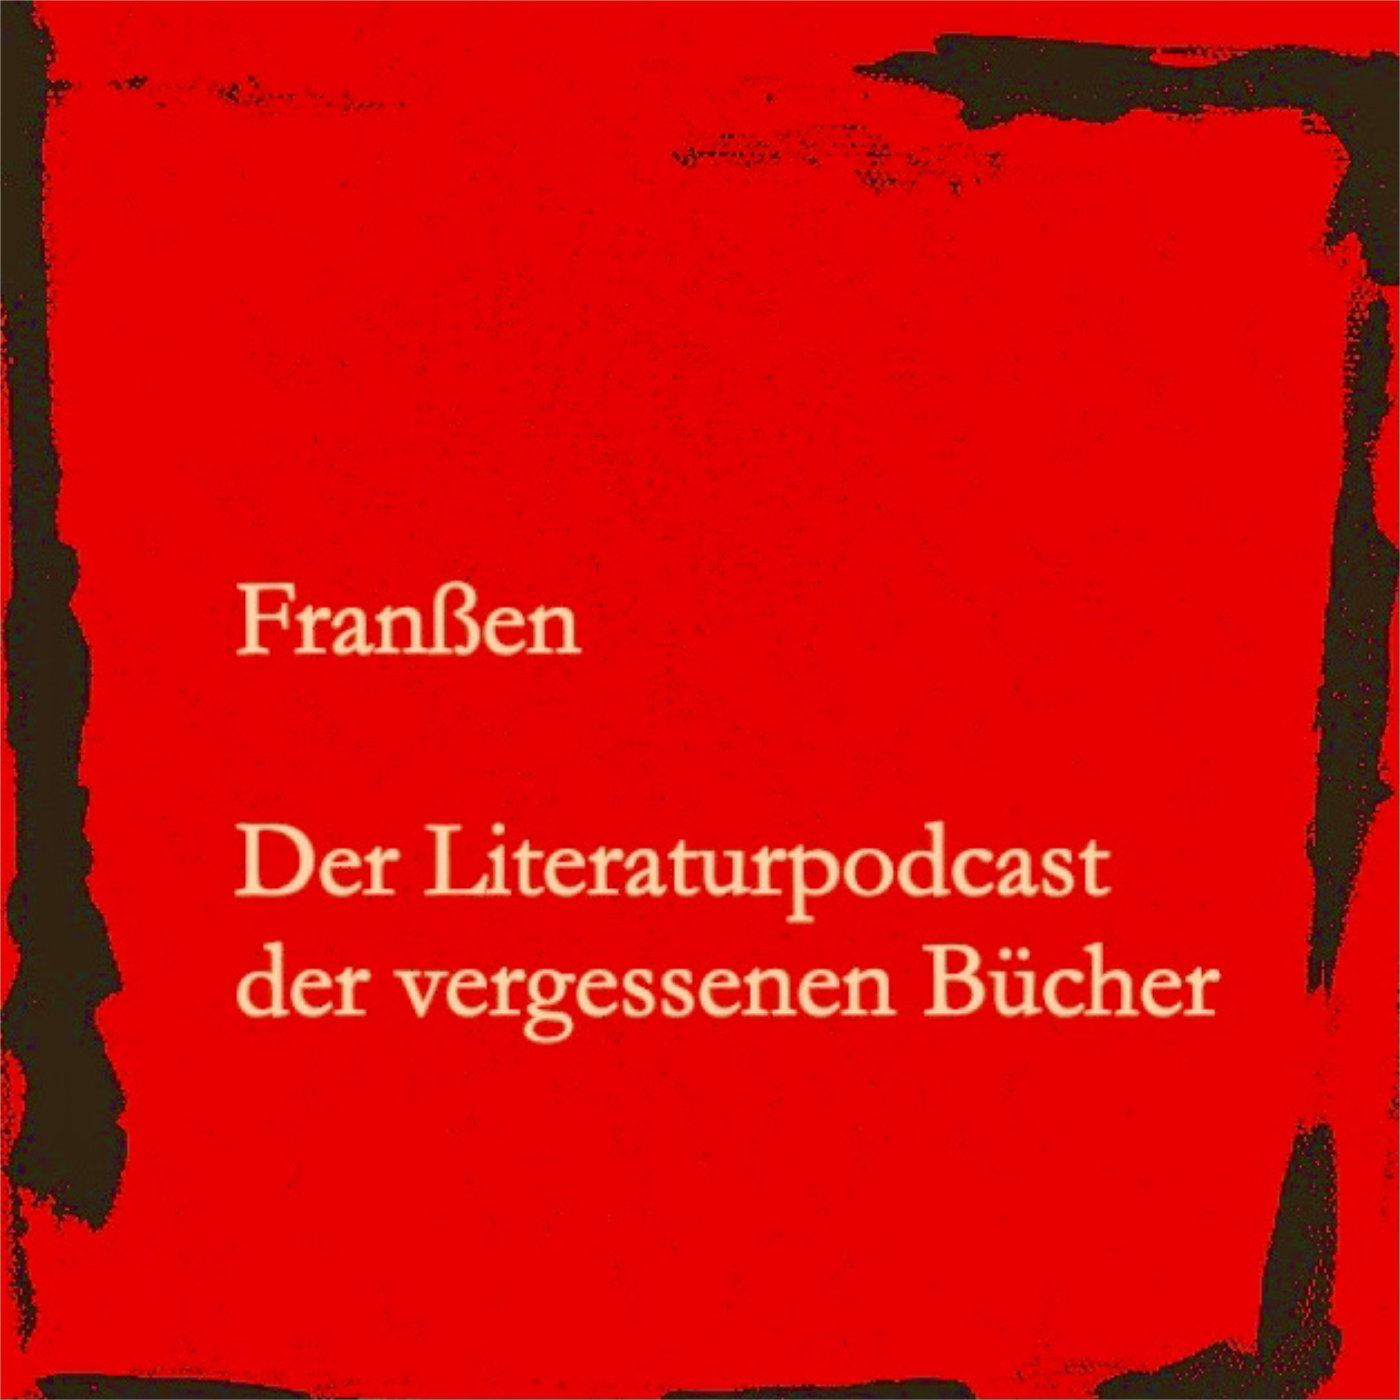 Der Literaturpodcast der vergessenen Bücher